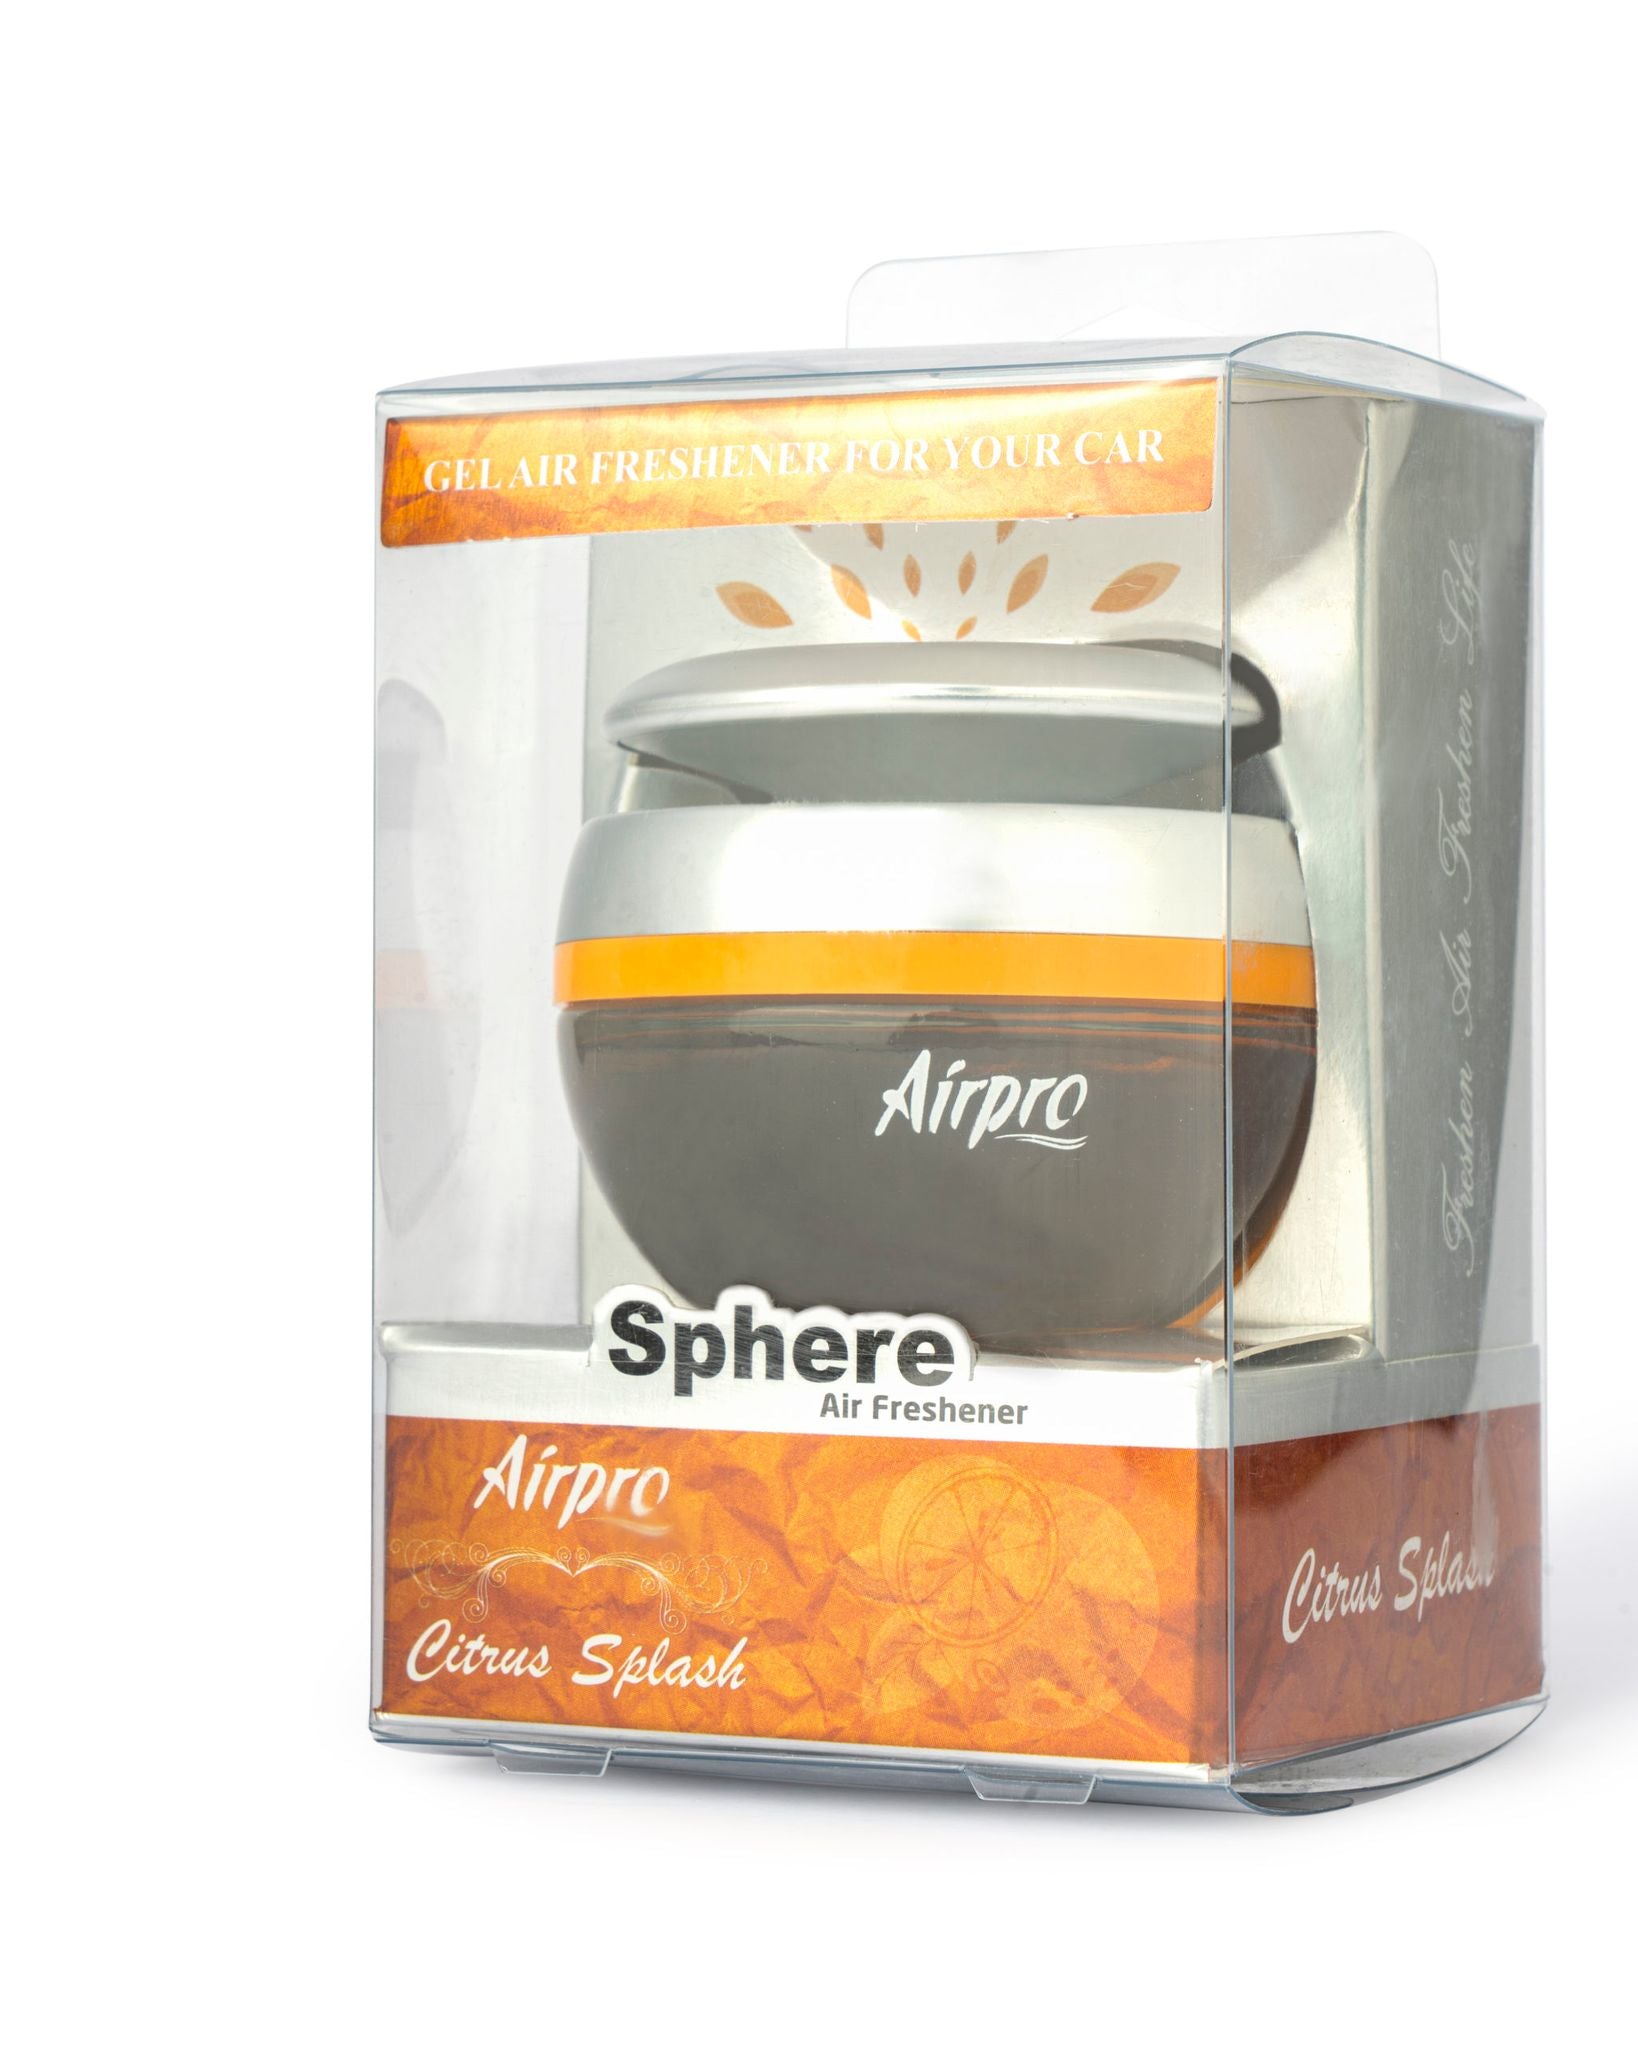 Airpro Sphere-Citrus Splash – dolphinaccessories